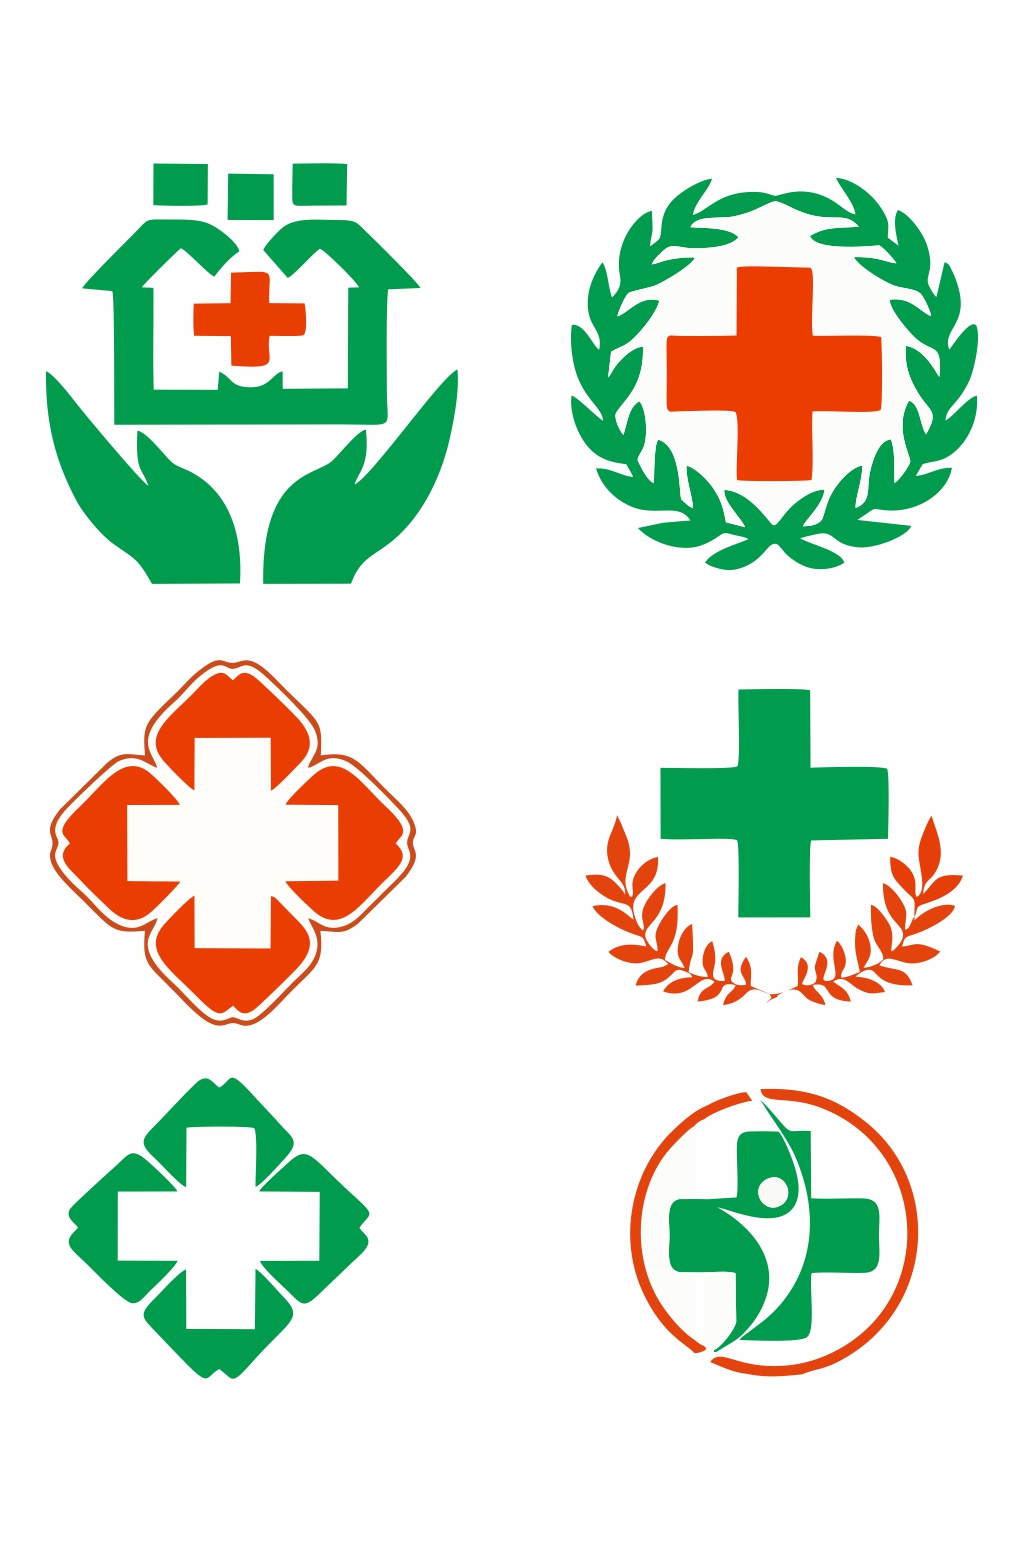 医院logo设计大全素材图片